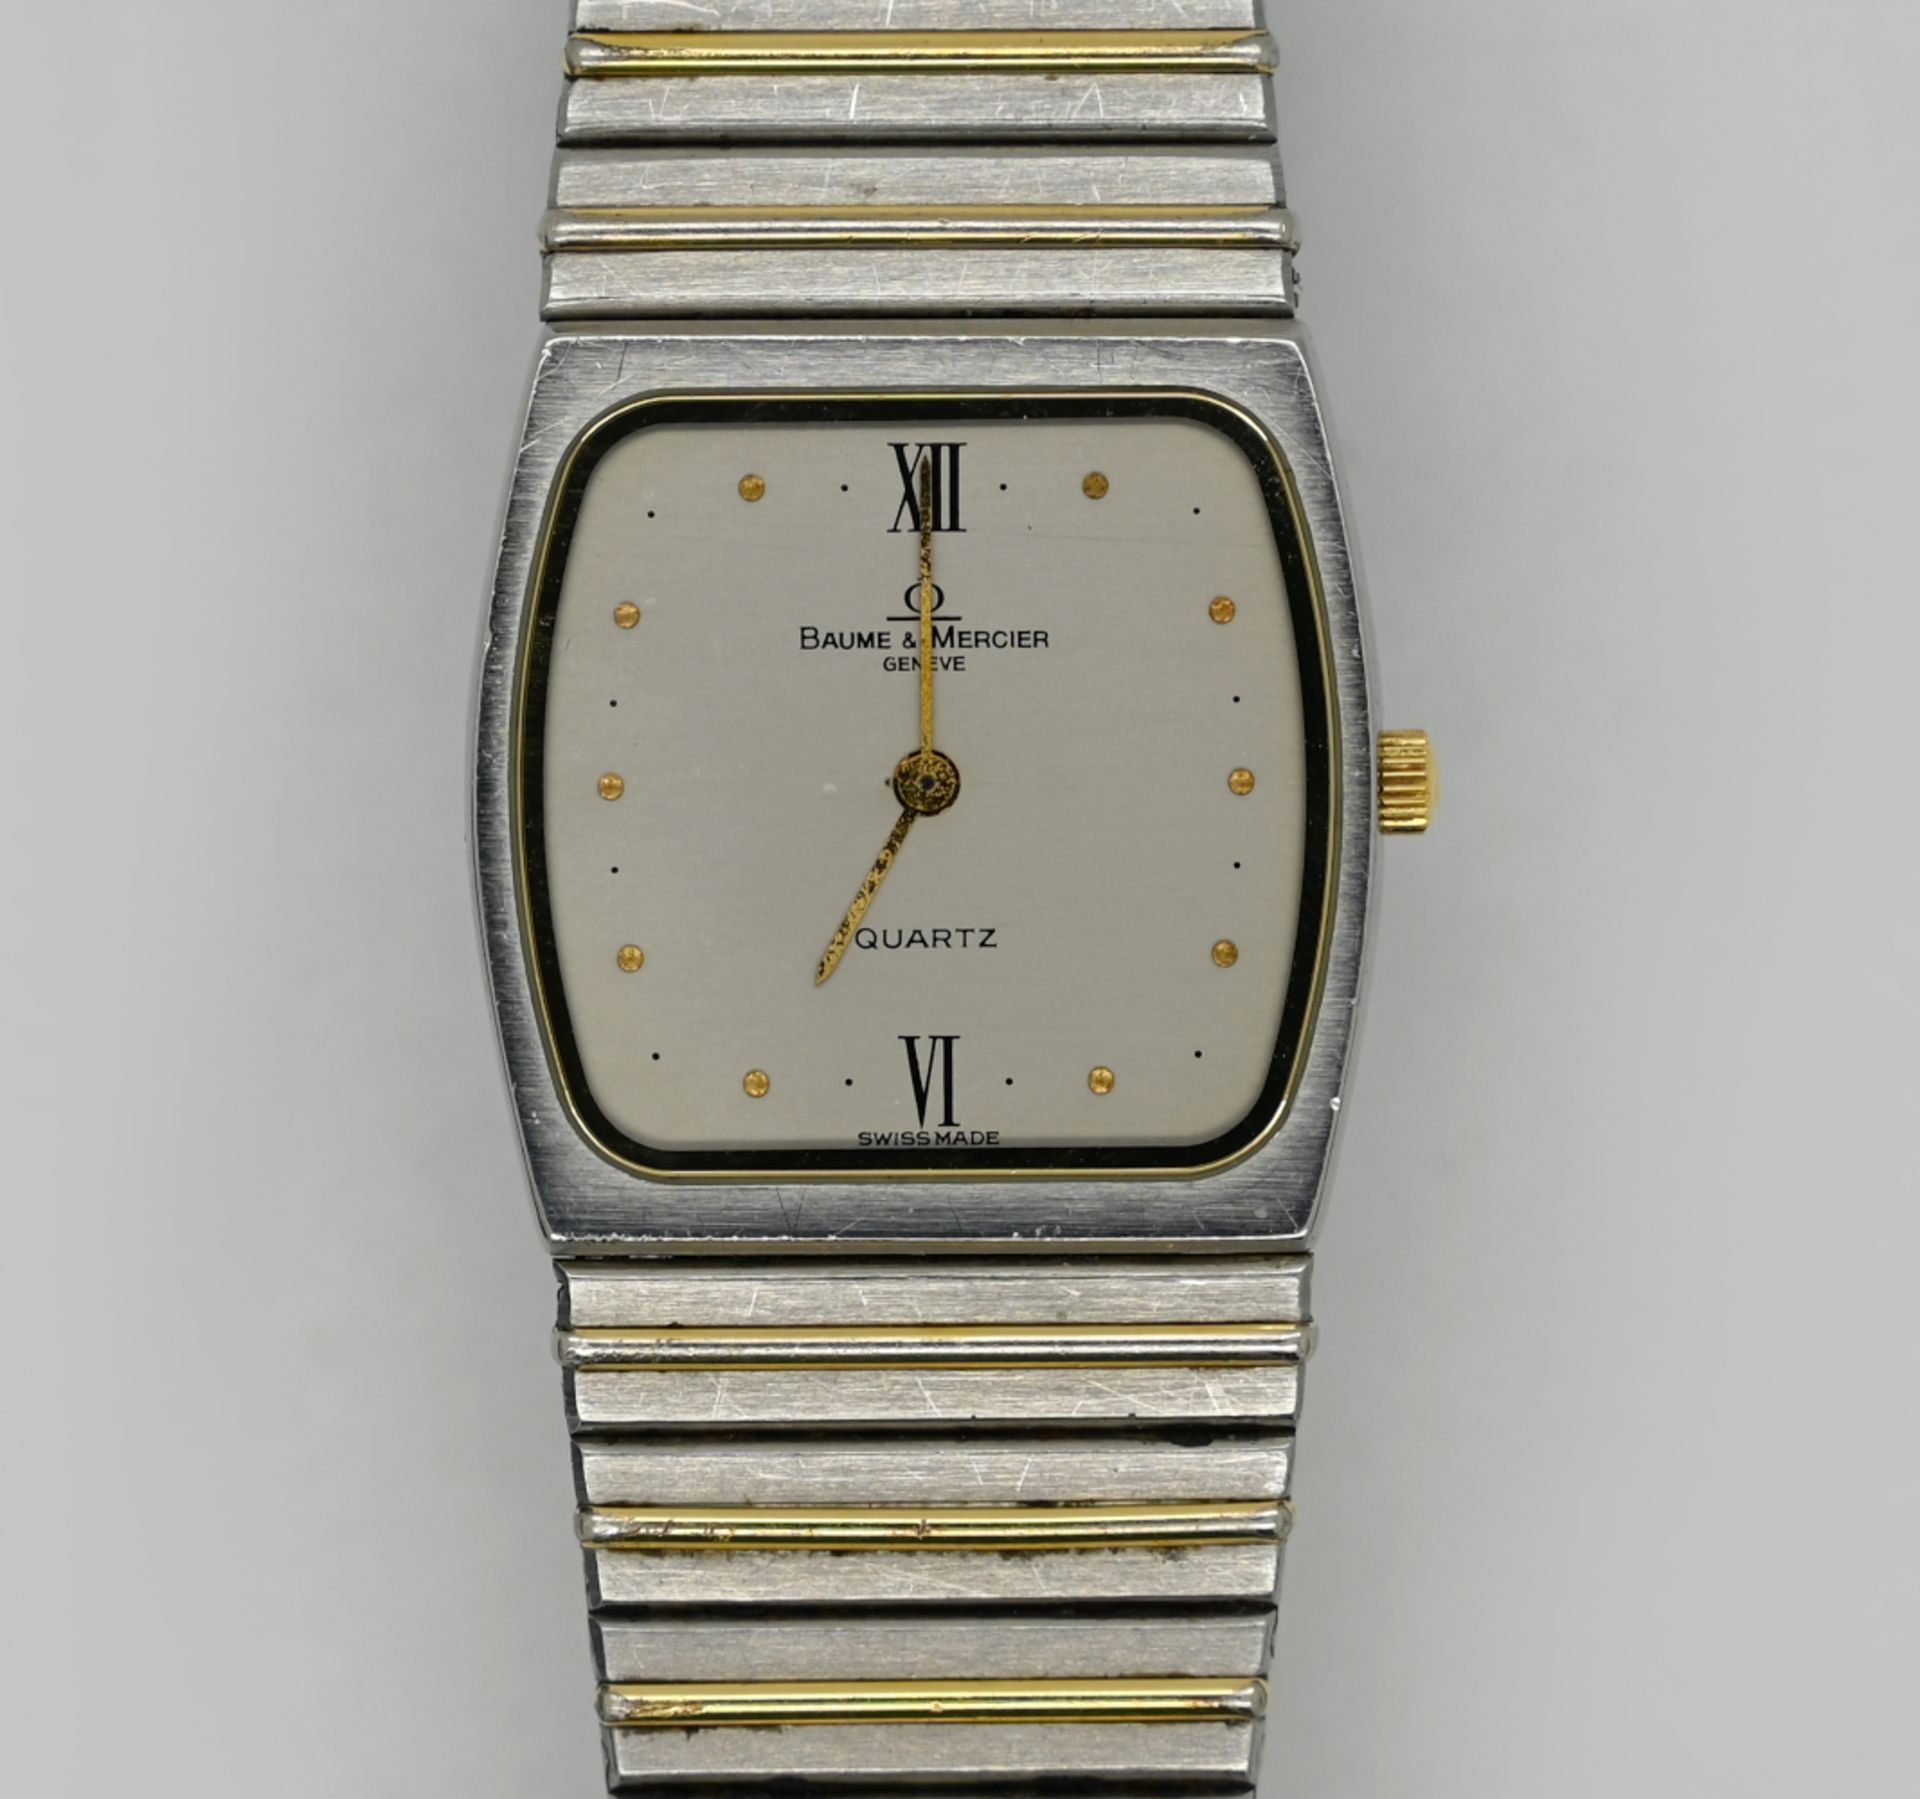 1 Armbanduhr BAUME & MERCIER Quartz., Stahl, wohl z.T. vergoldet mit 2 Ersatzgliedern Tsp. - Bild 2 aus 2